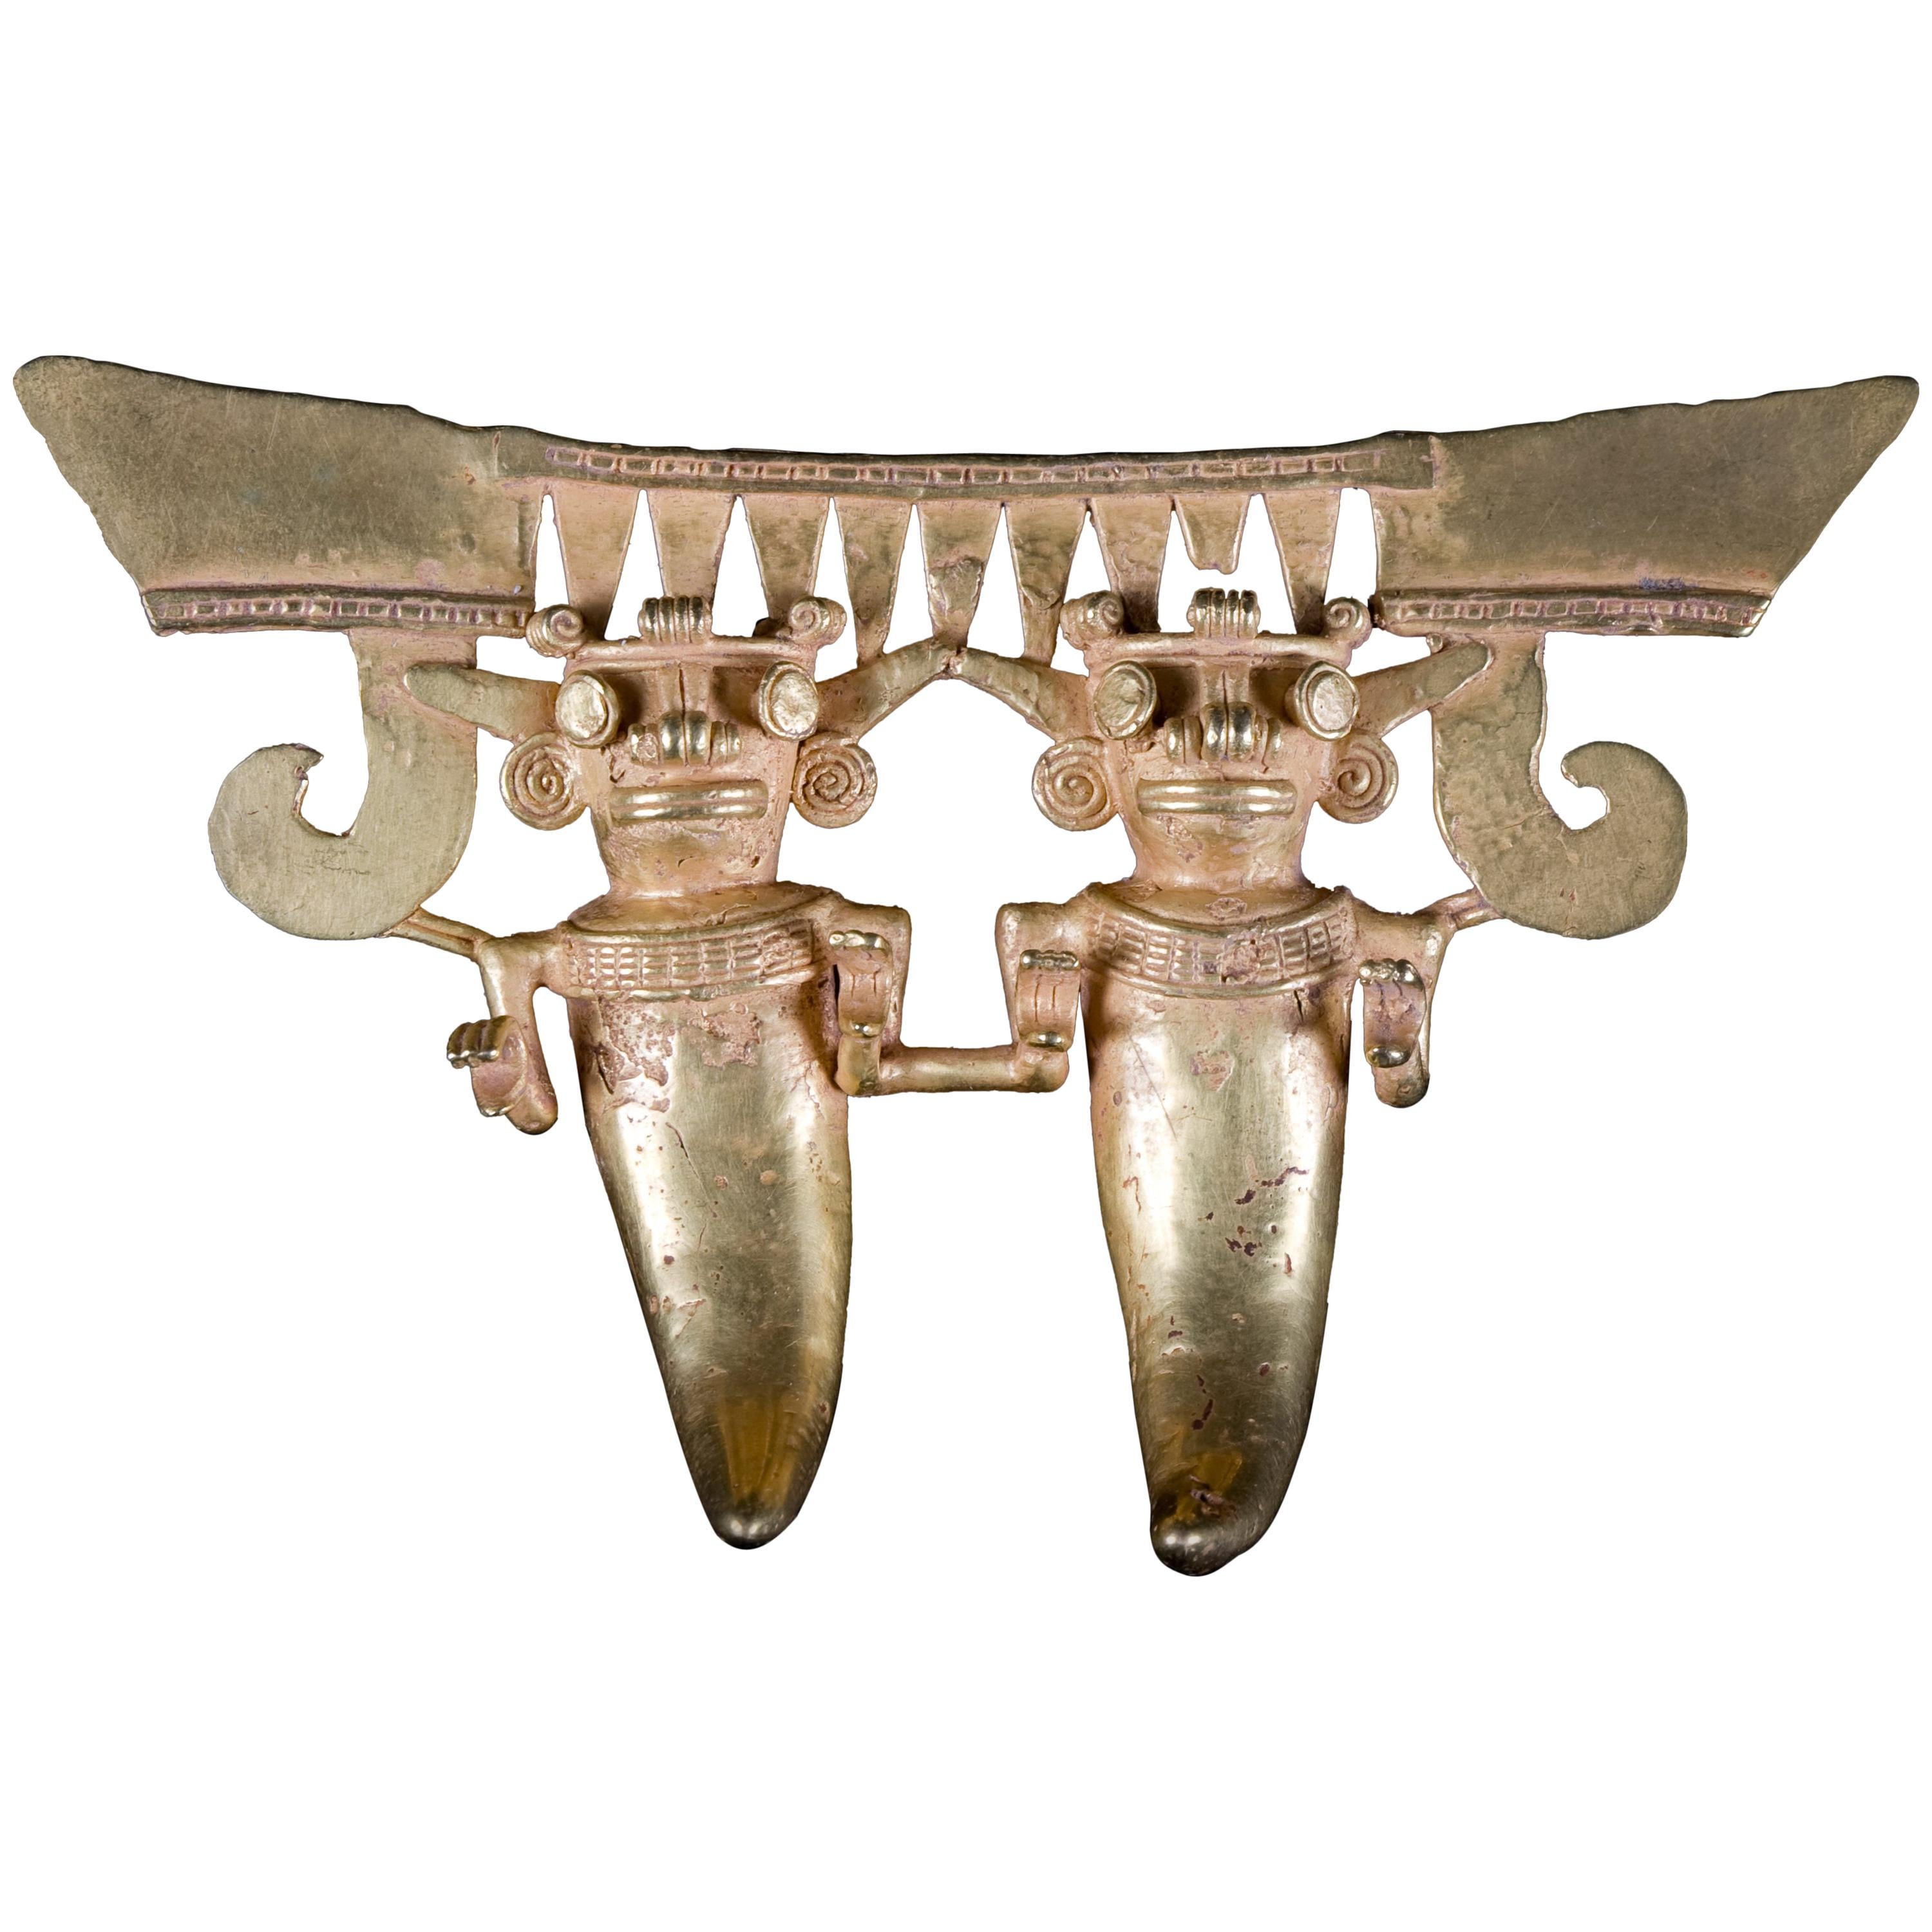 Pendentif jumelles en or précolombien de qualité musée, vers 800 à 1500 avant J.-C.